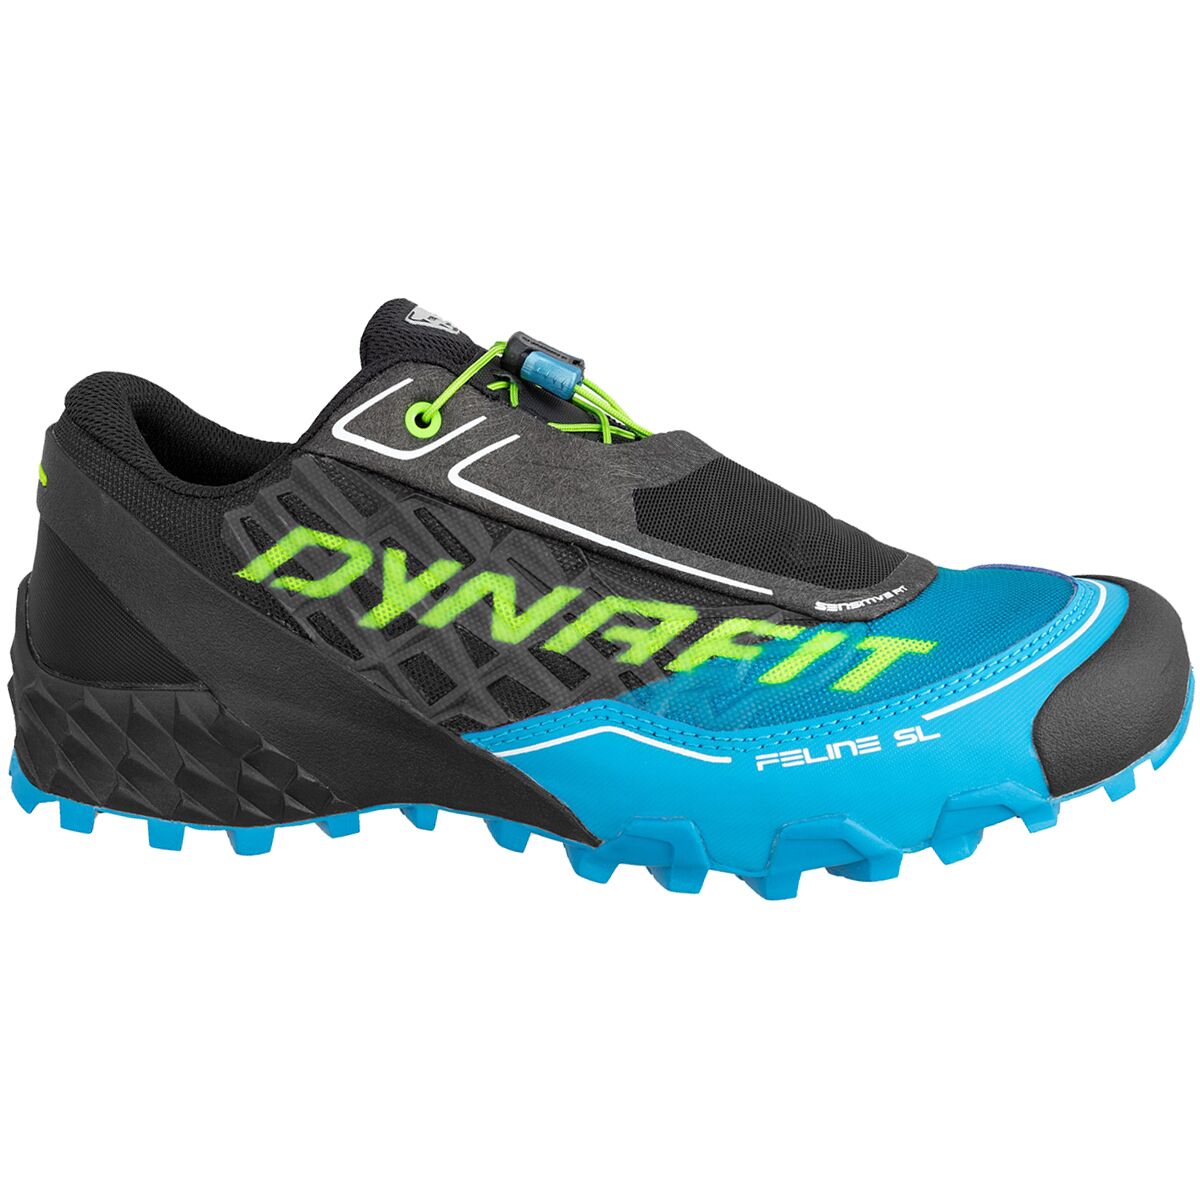 Dynafit Feline SL Trail Running Shoe - Men's